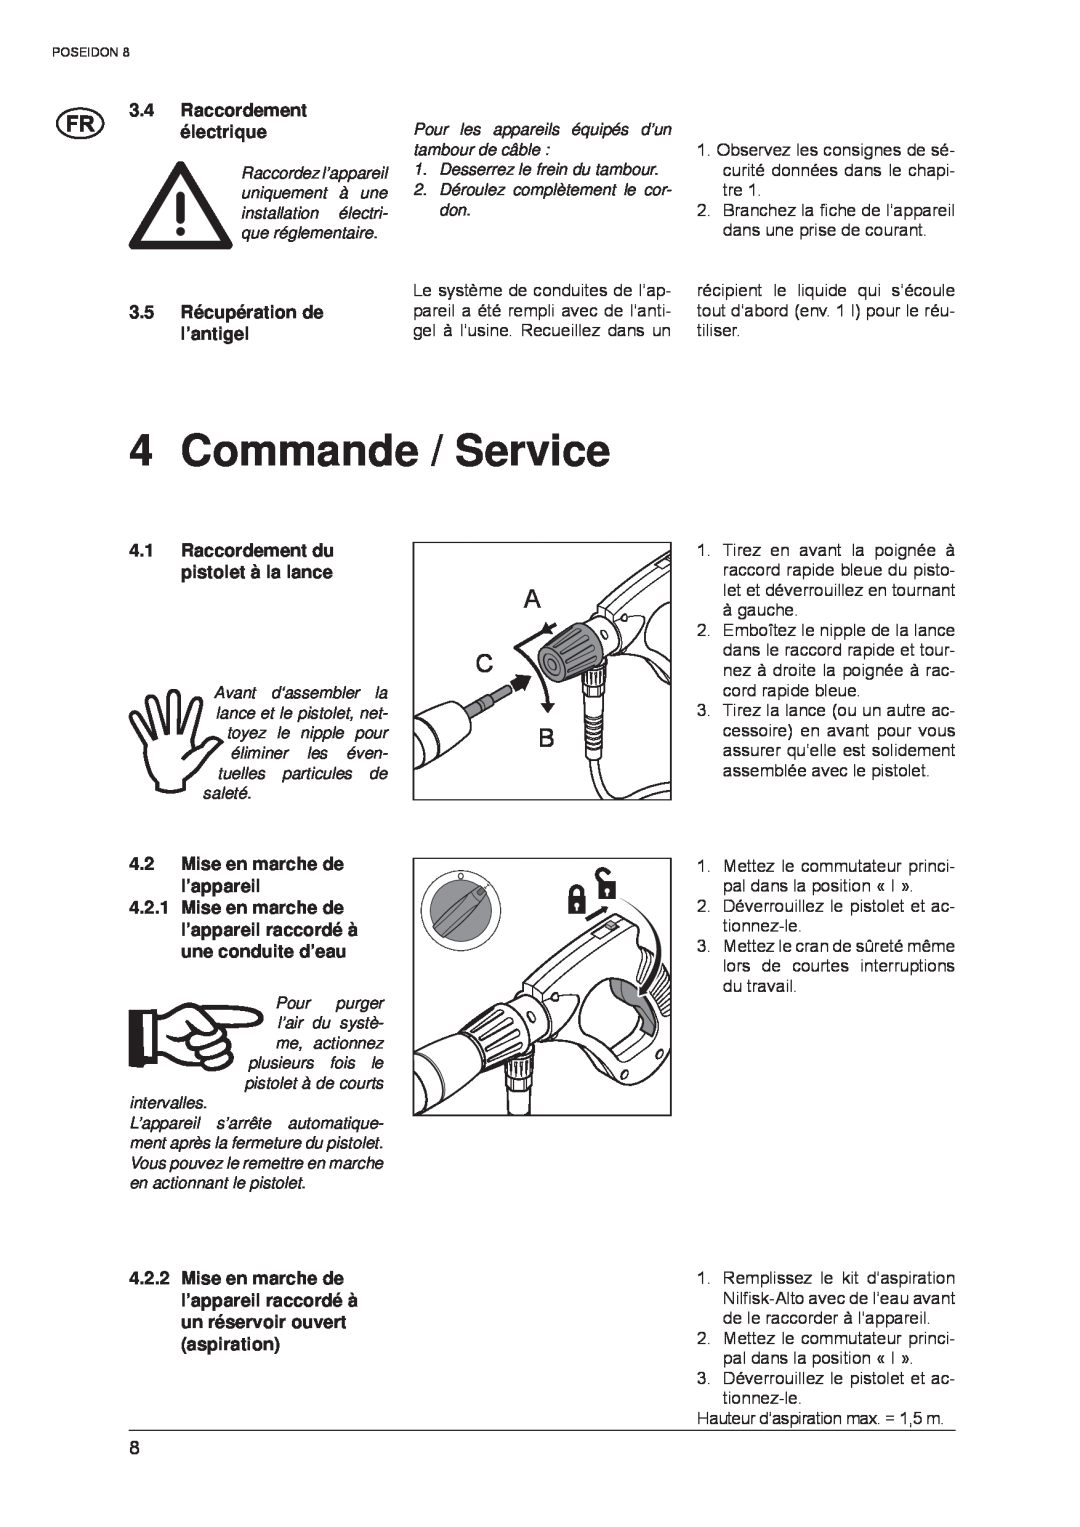 Nilfisk-ALTO POSEIDON 8 manual Commande / Service, 3.4Raccordement électrique, 3.5Récupération de l’antigel 